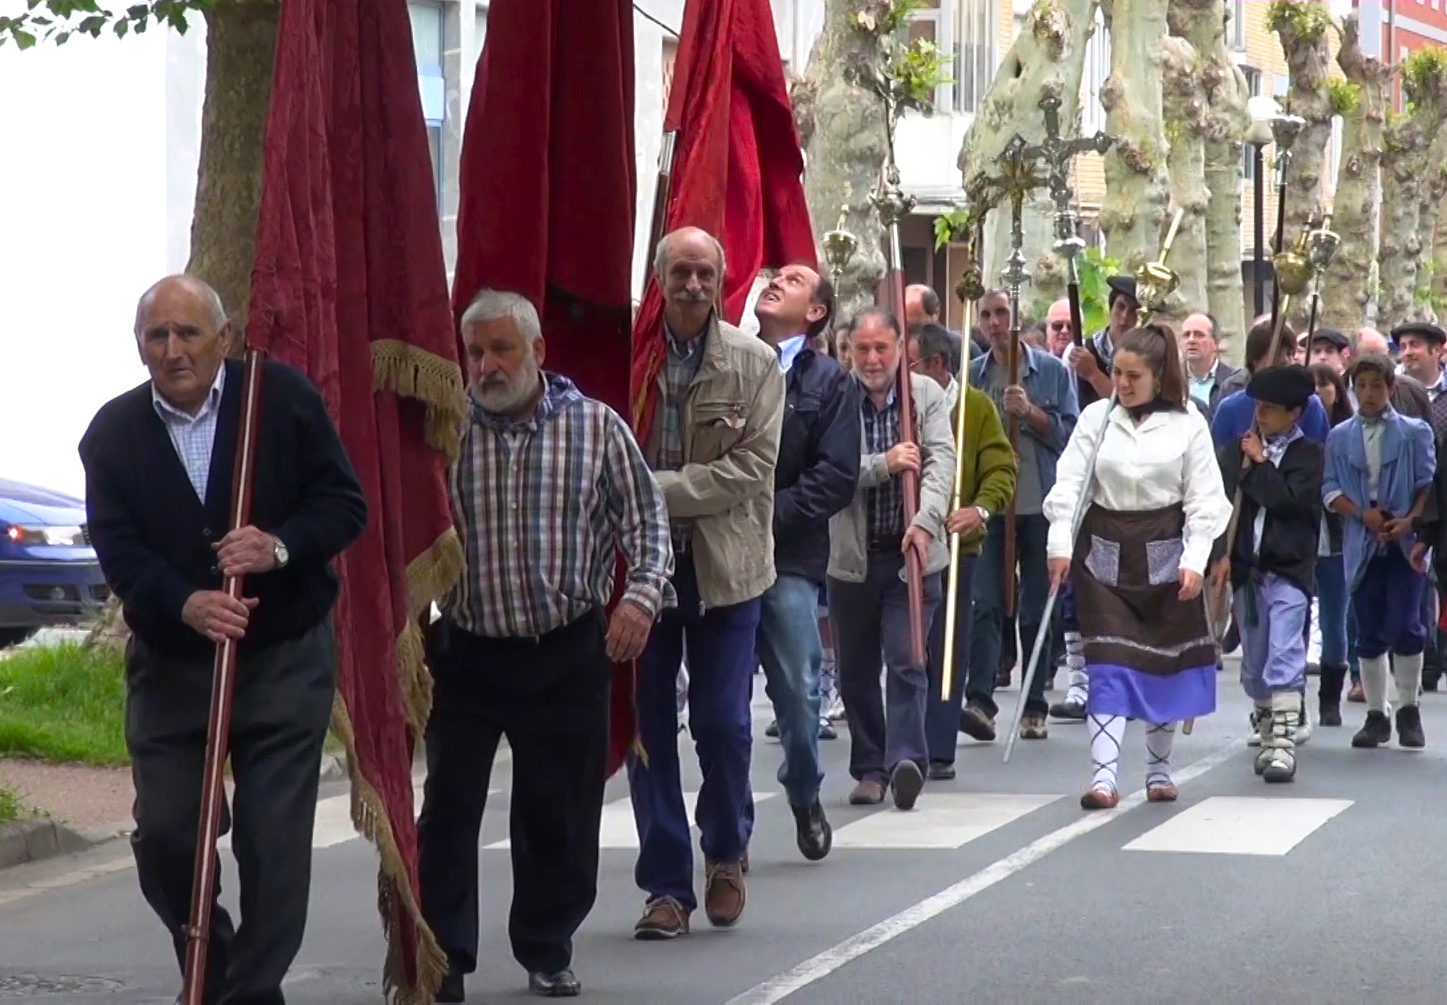 Procesión de los representantes de Arrastaria al santuario de la Antigua. Orduña (Bizkaia), 2014